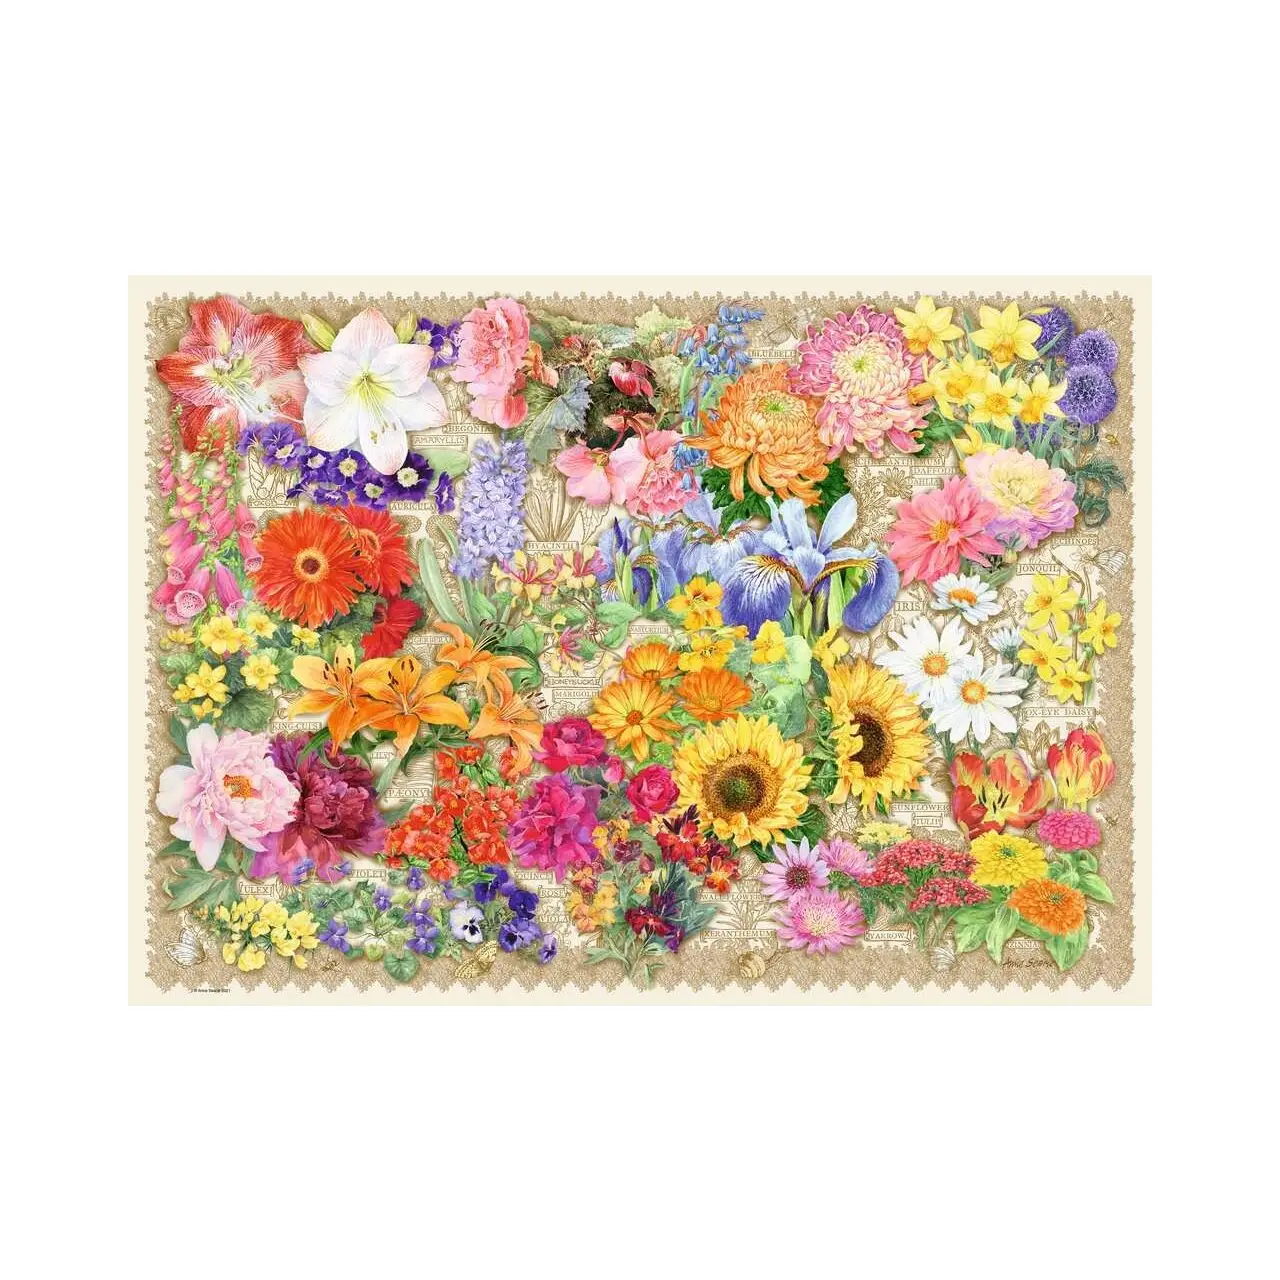 Puzzle Teile Blumen 1000